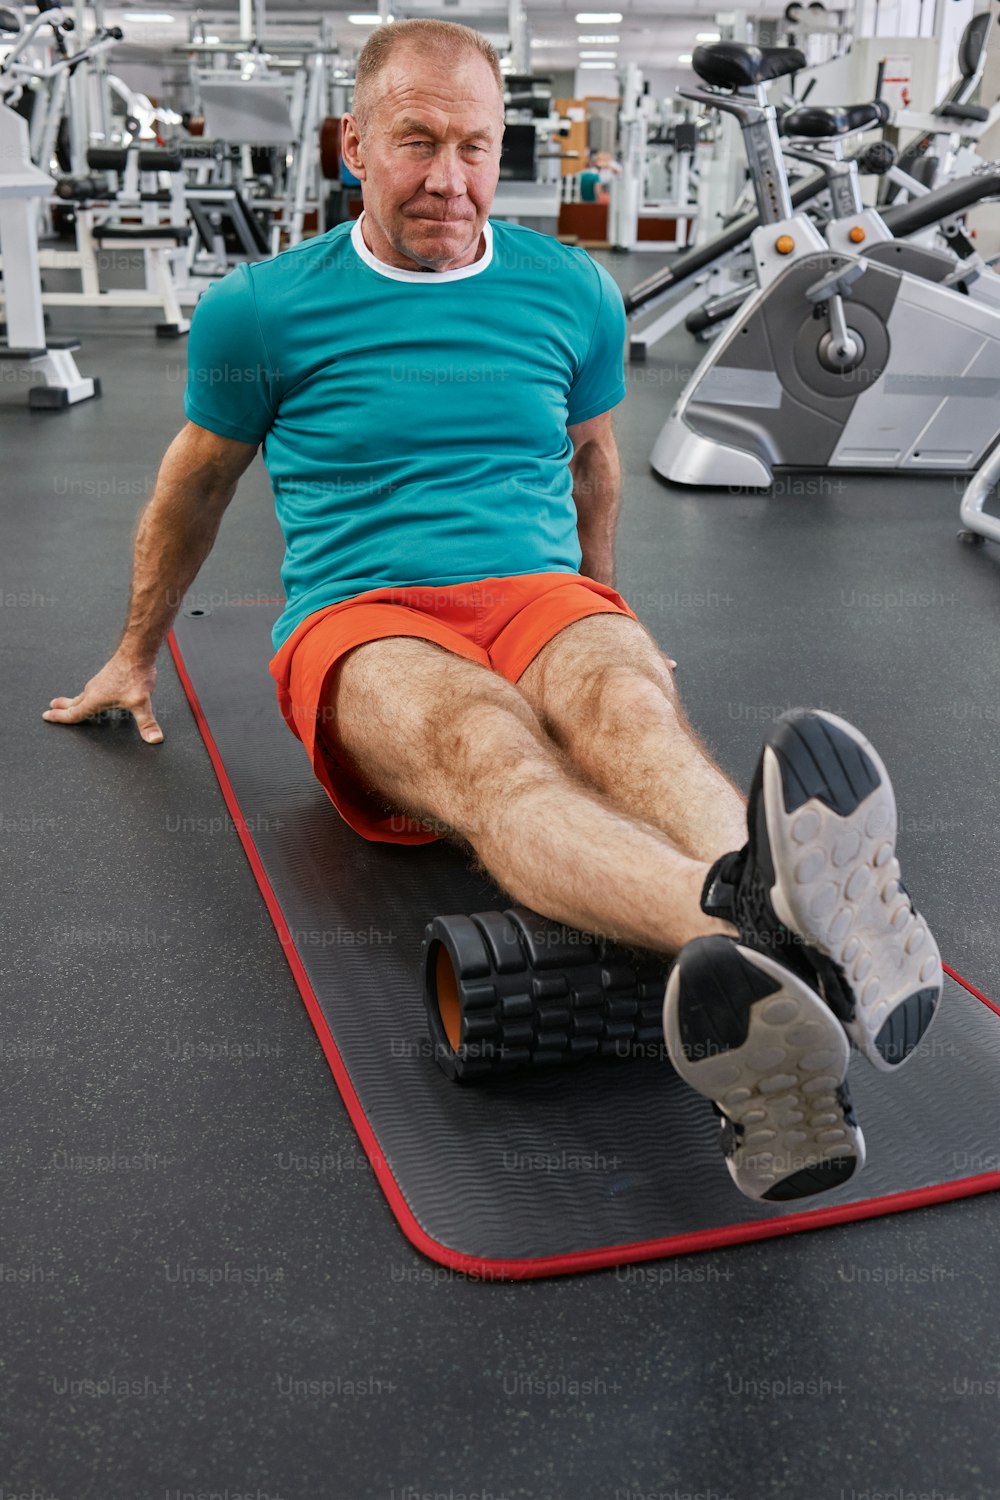 Un hombre sentado en una colchoneta en un gimnasio